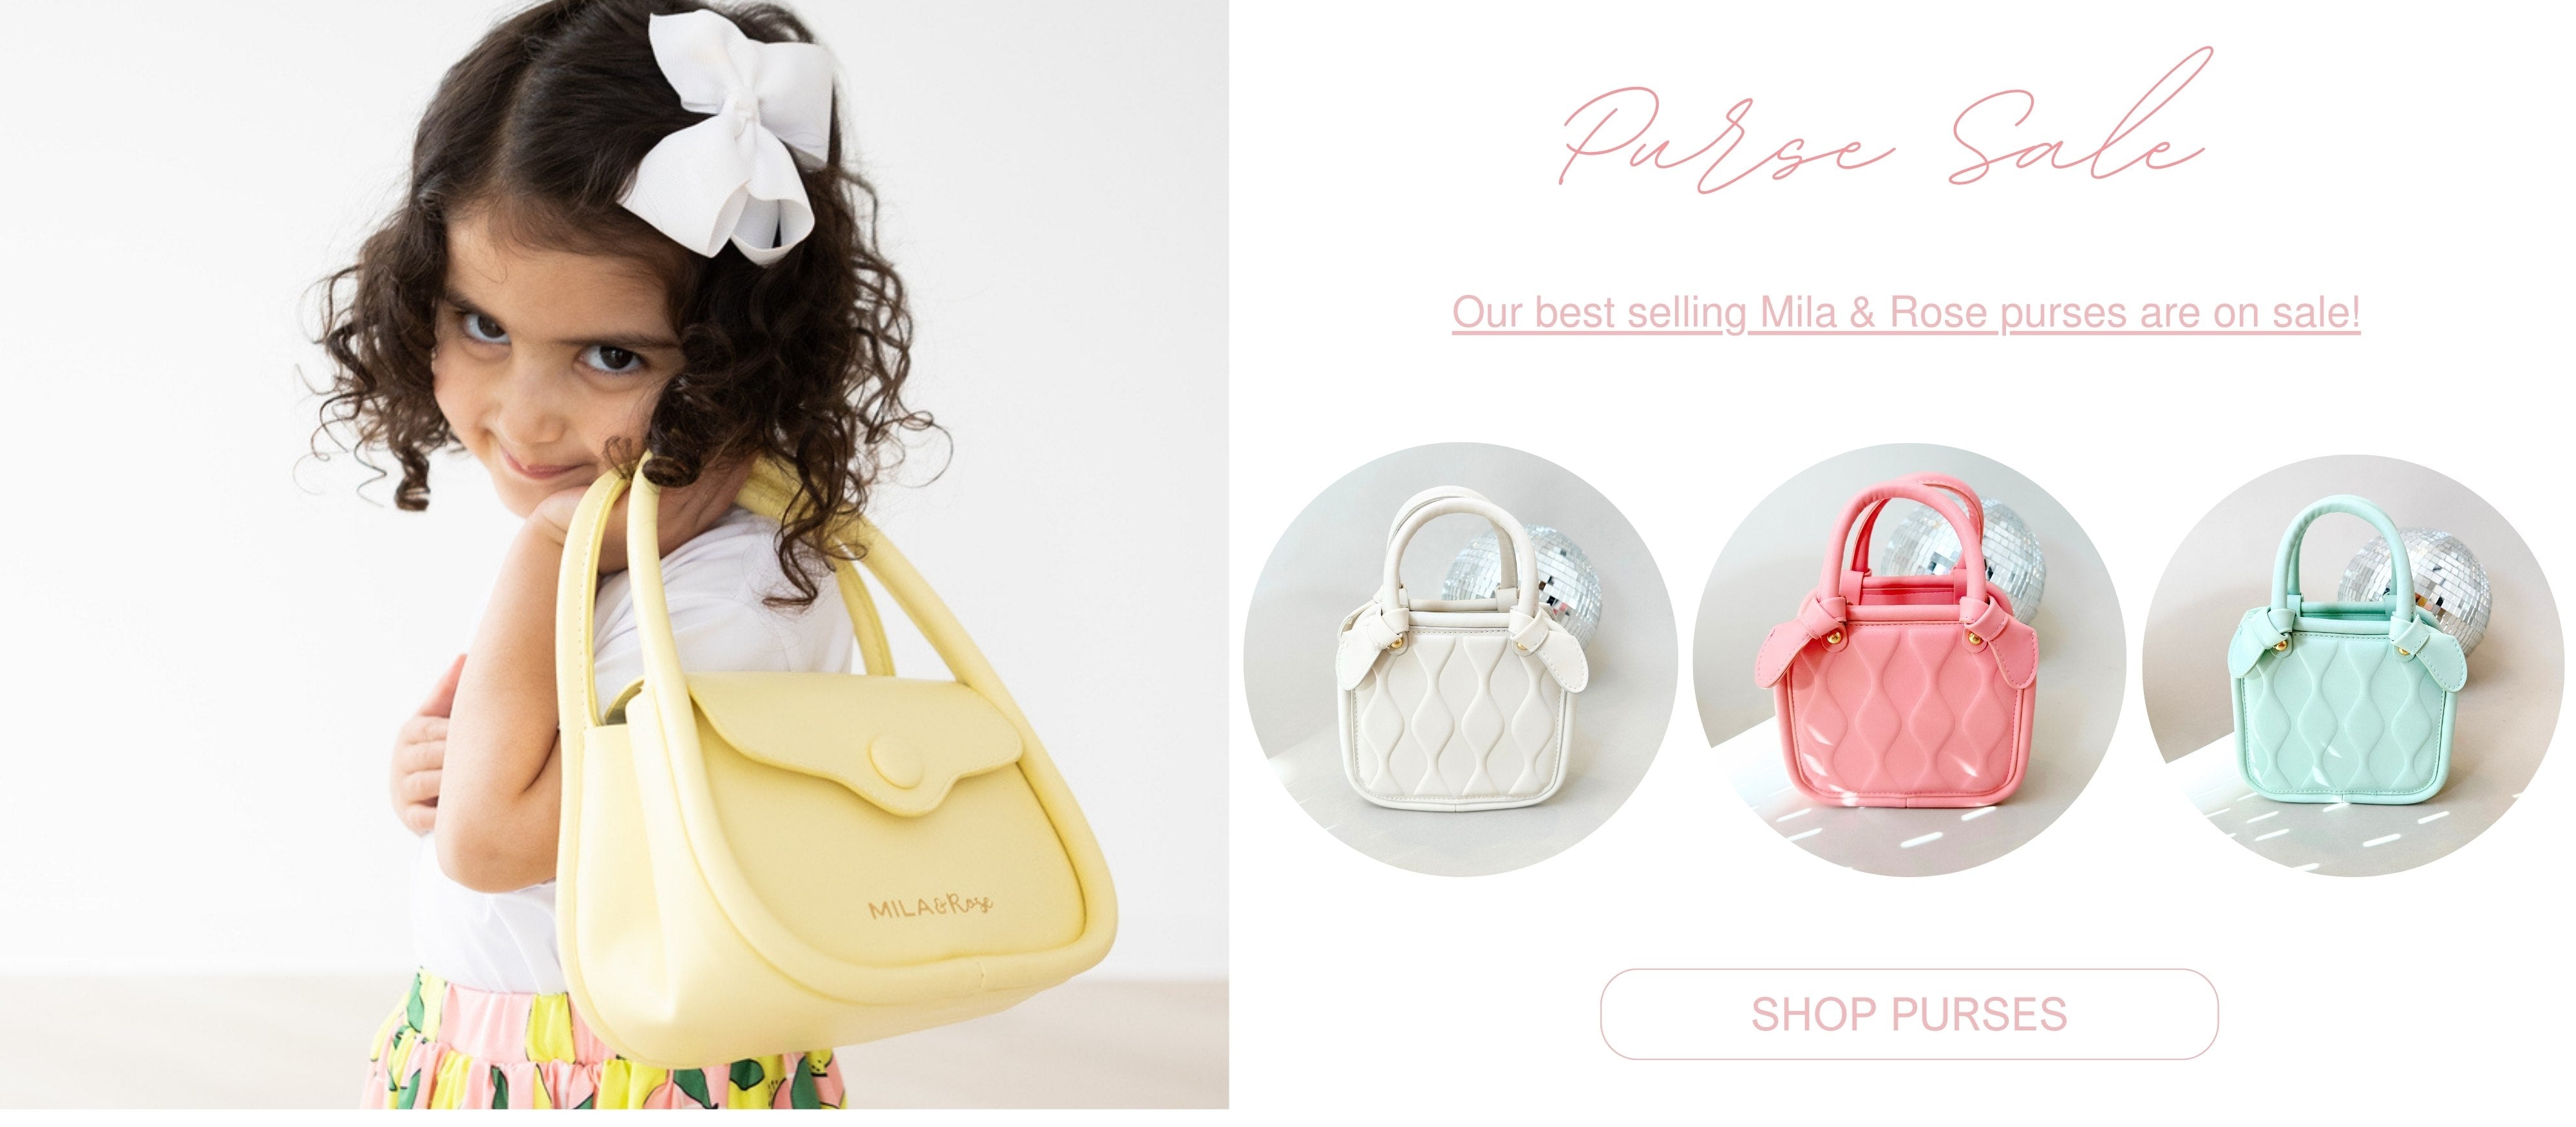 little girls purses on sale